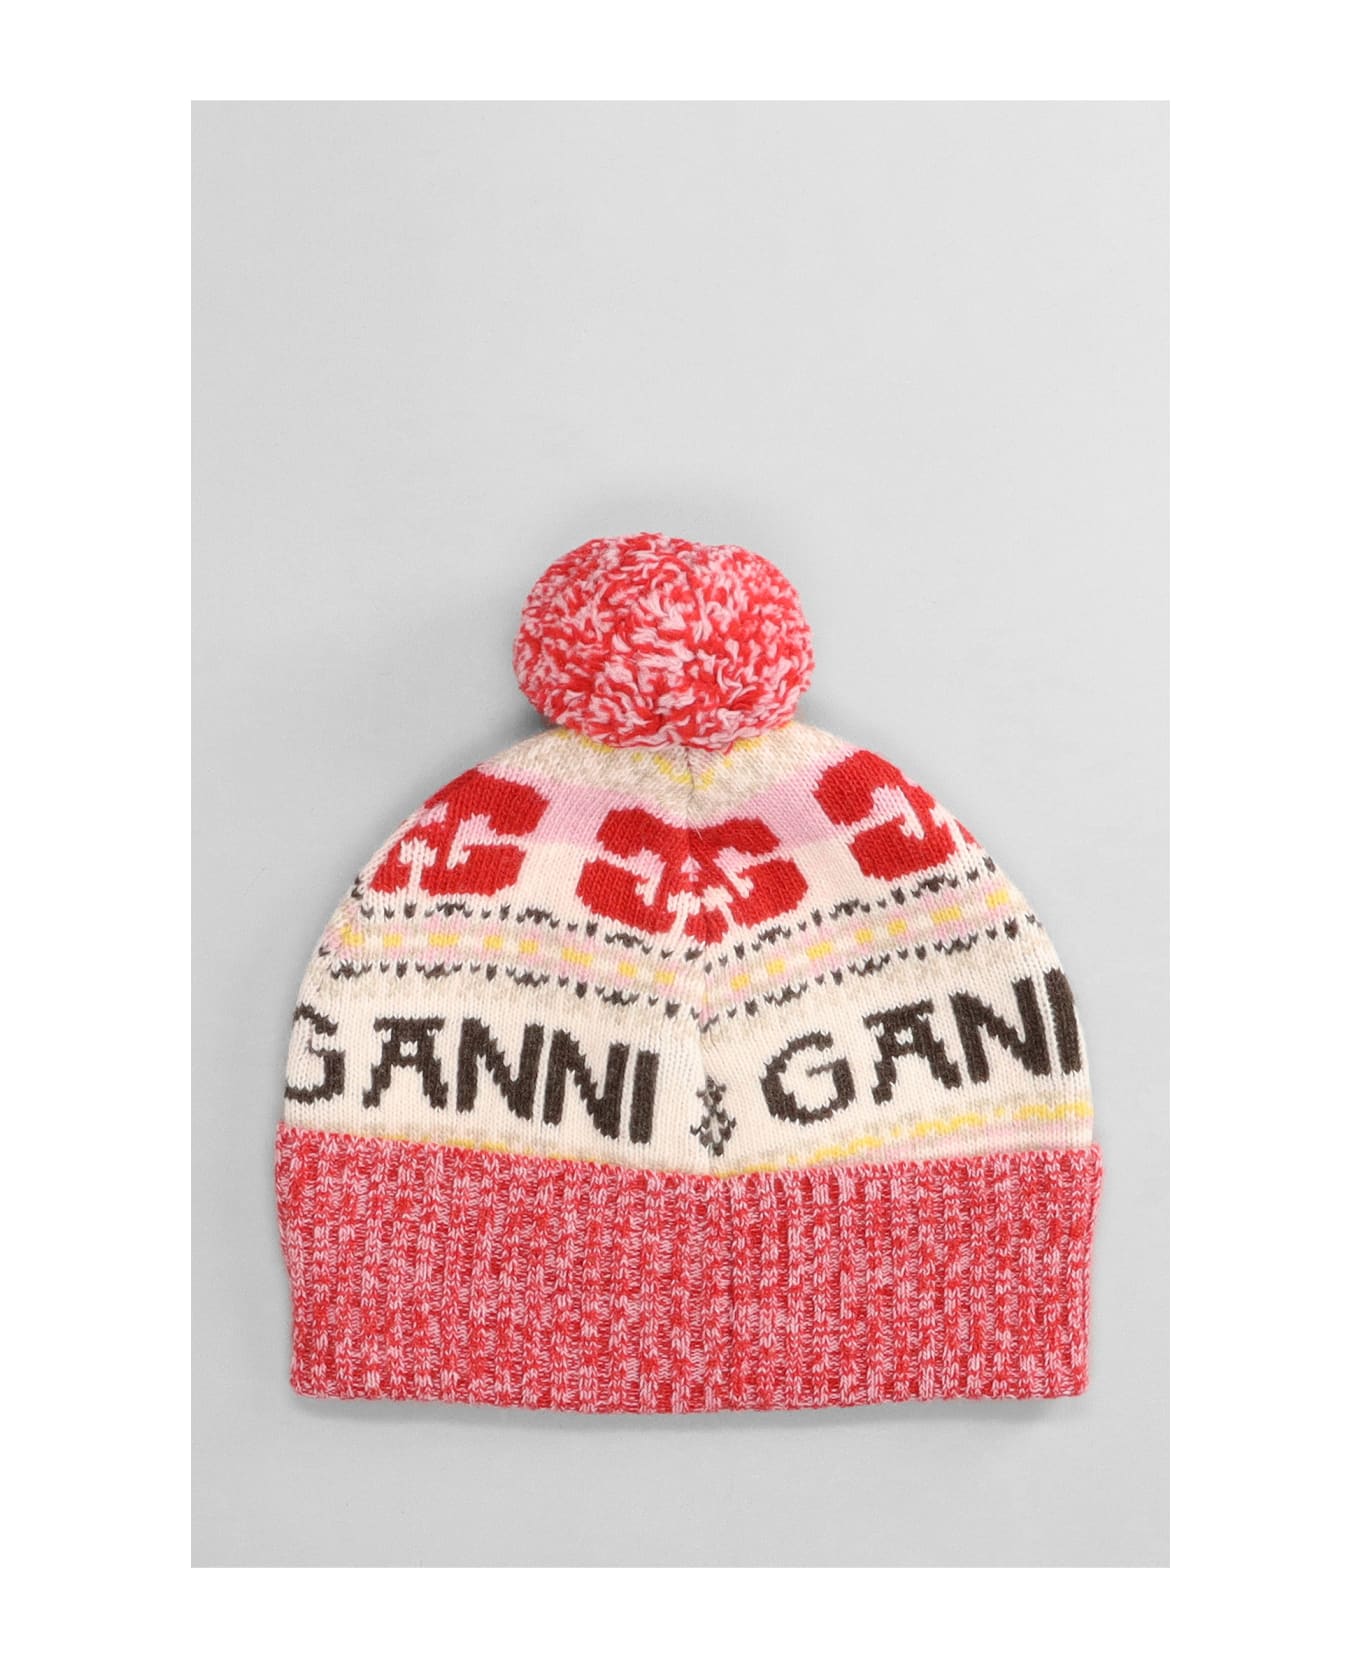 Ganni Hats In Multicolor Wool - multicolor